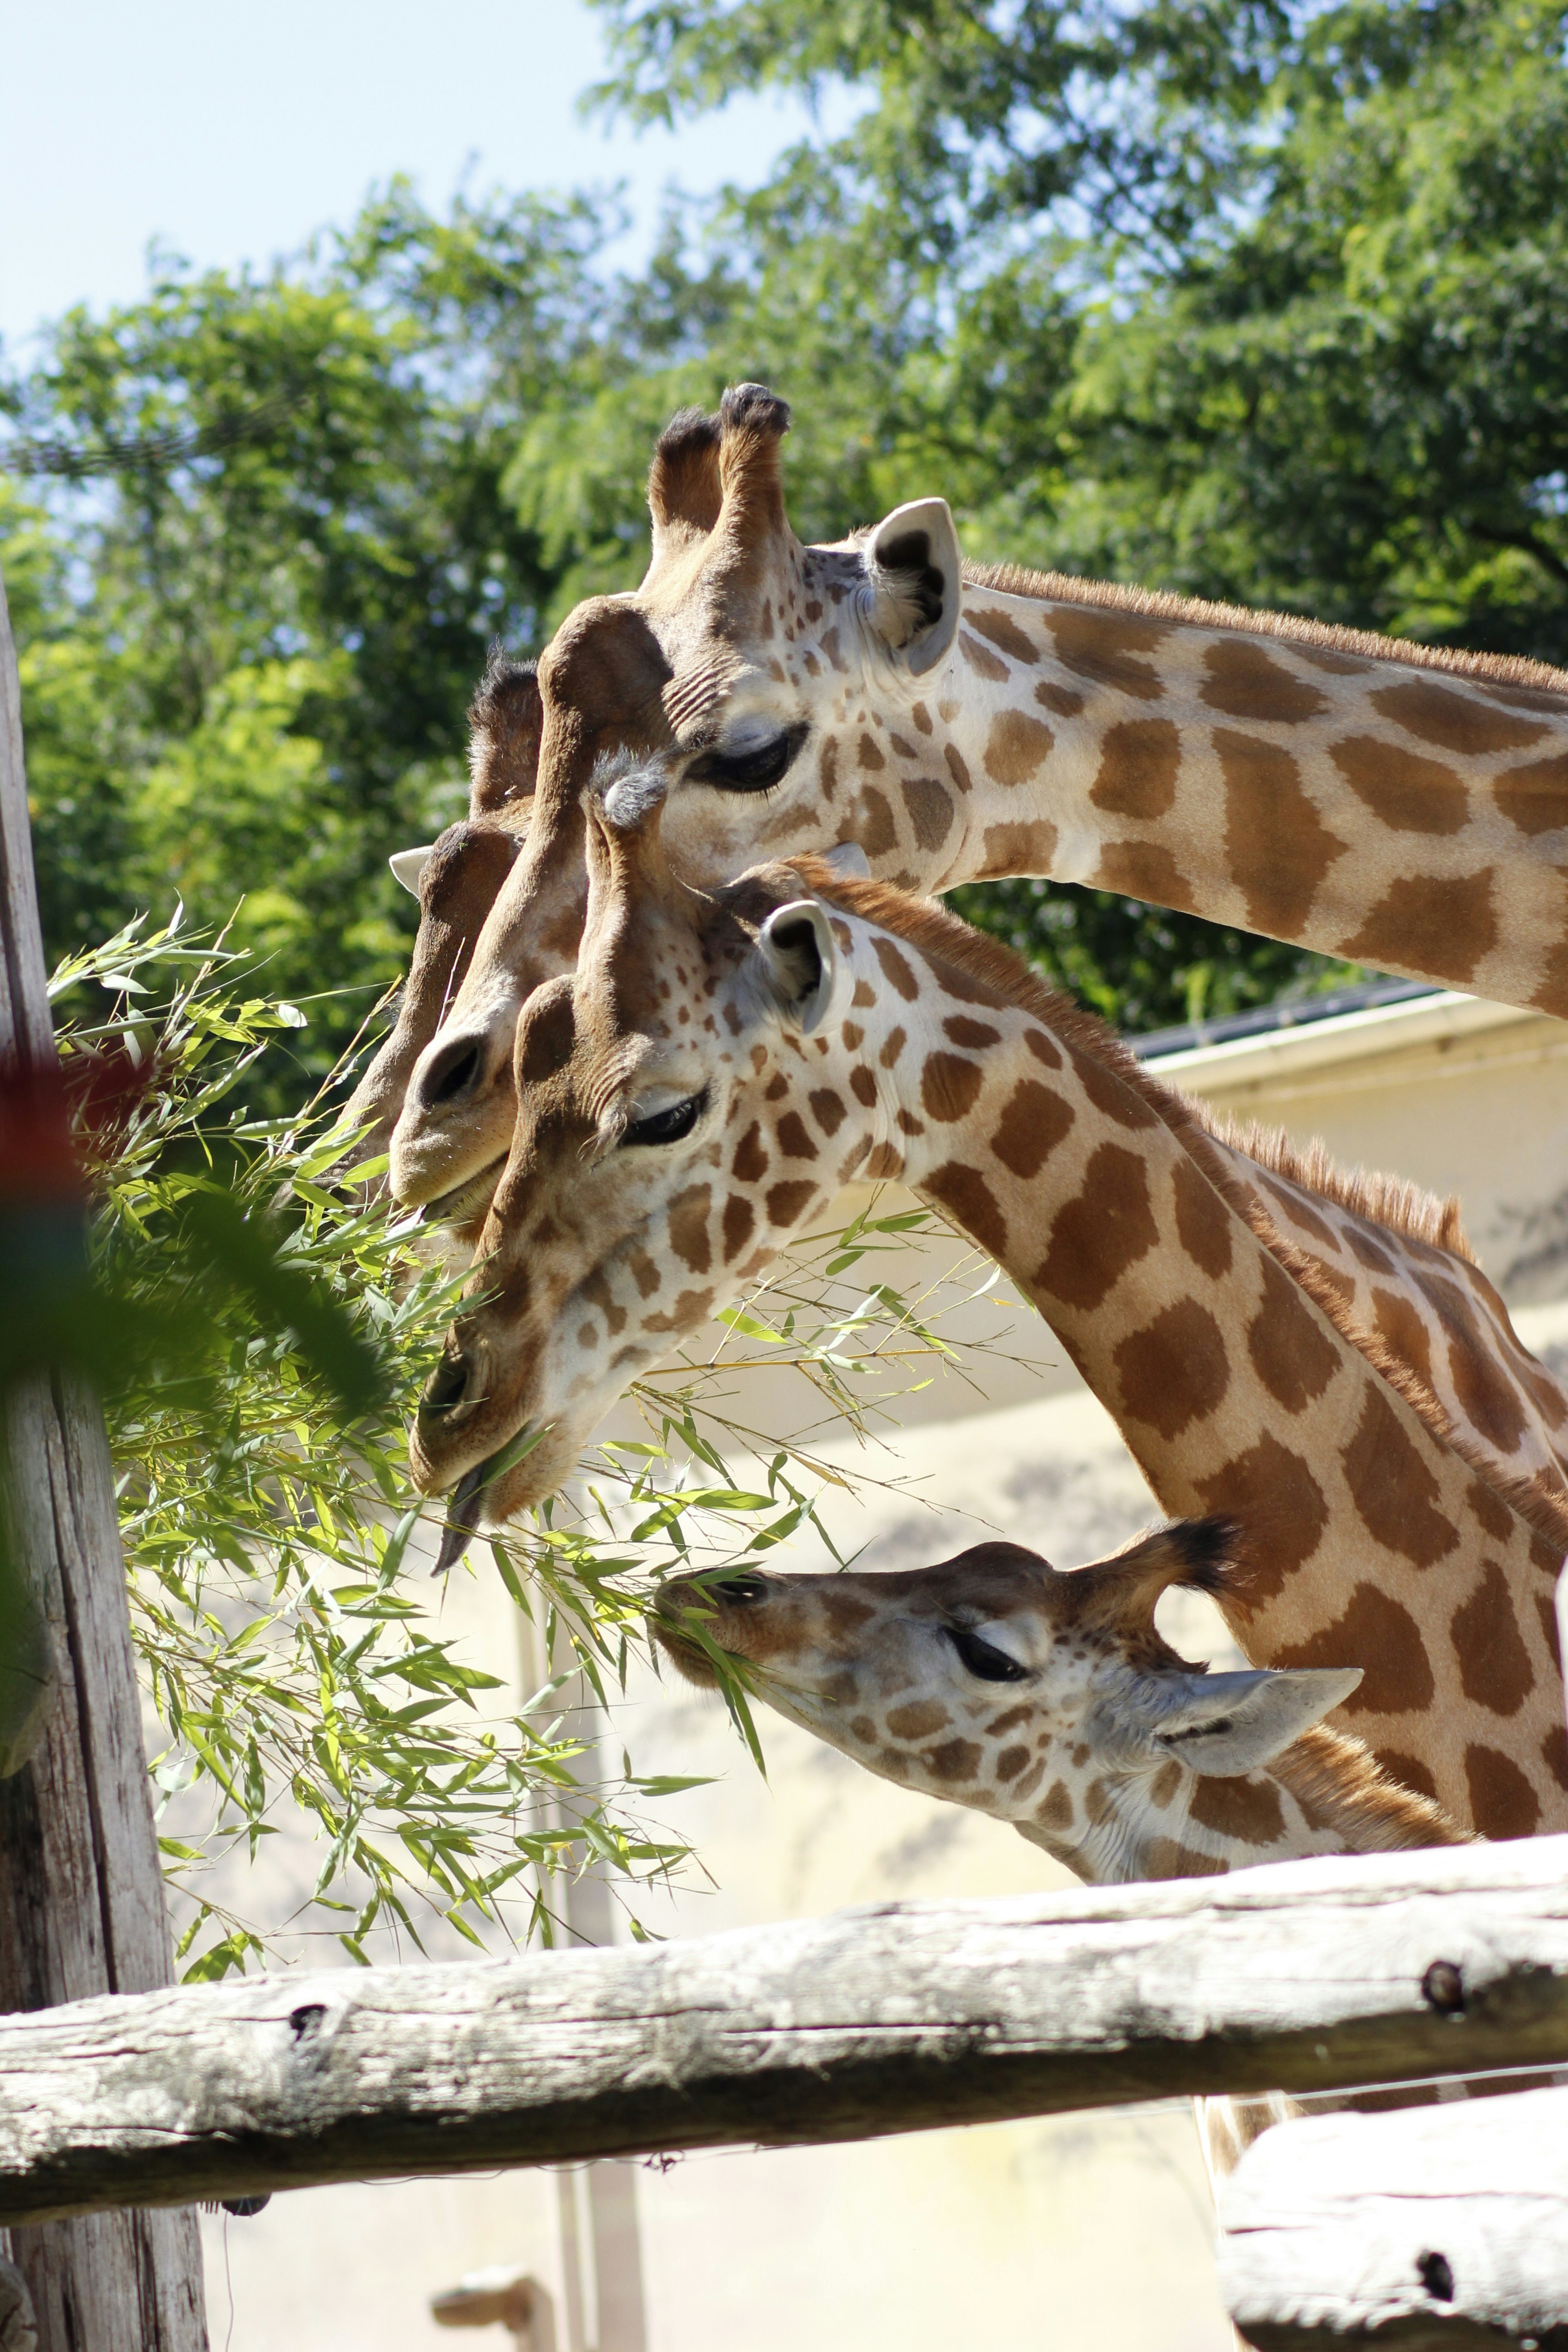 Giraffe Family Taking Their Meal